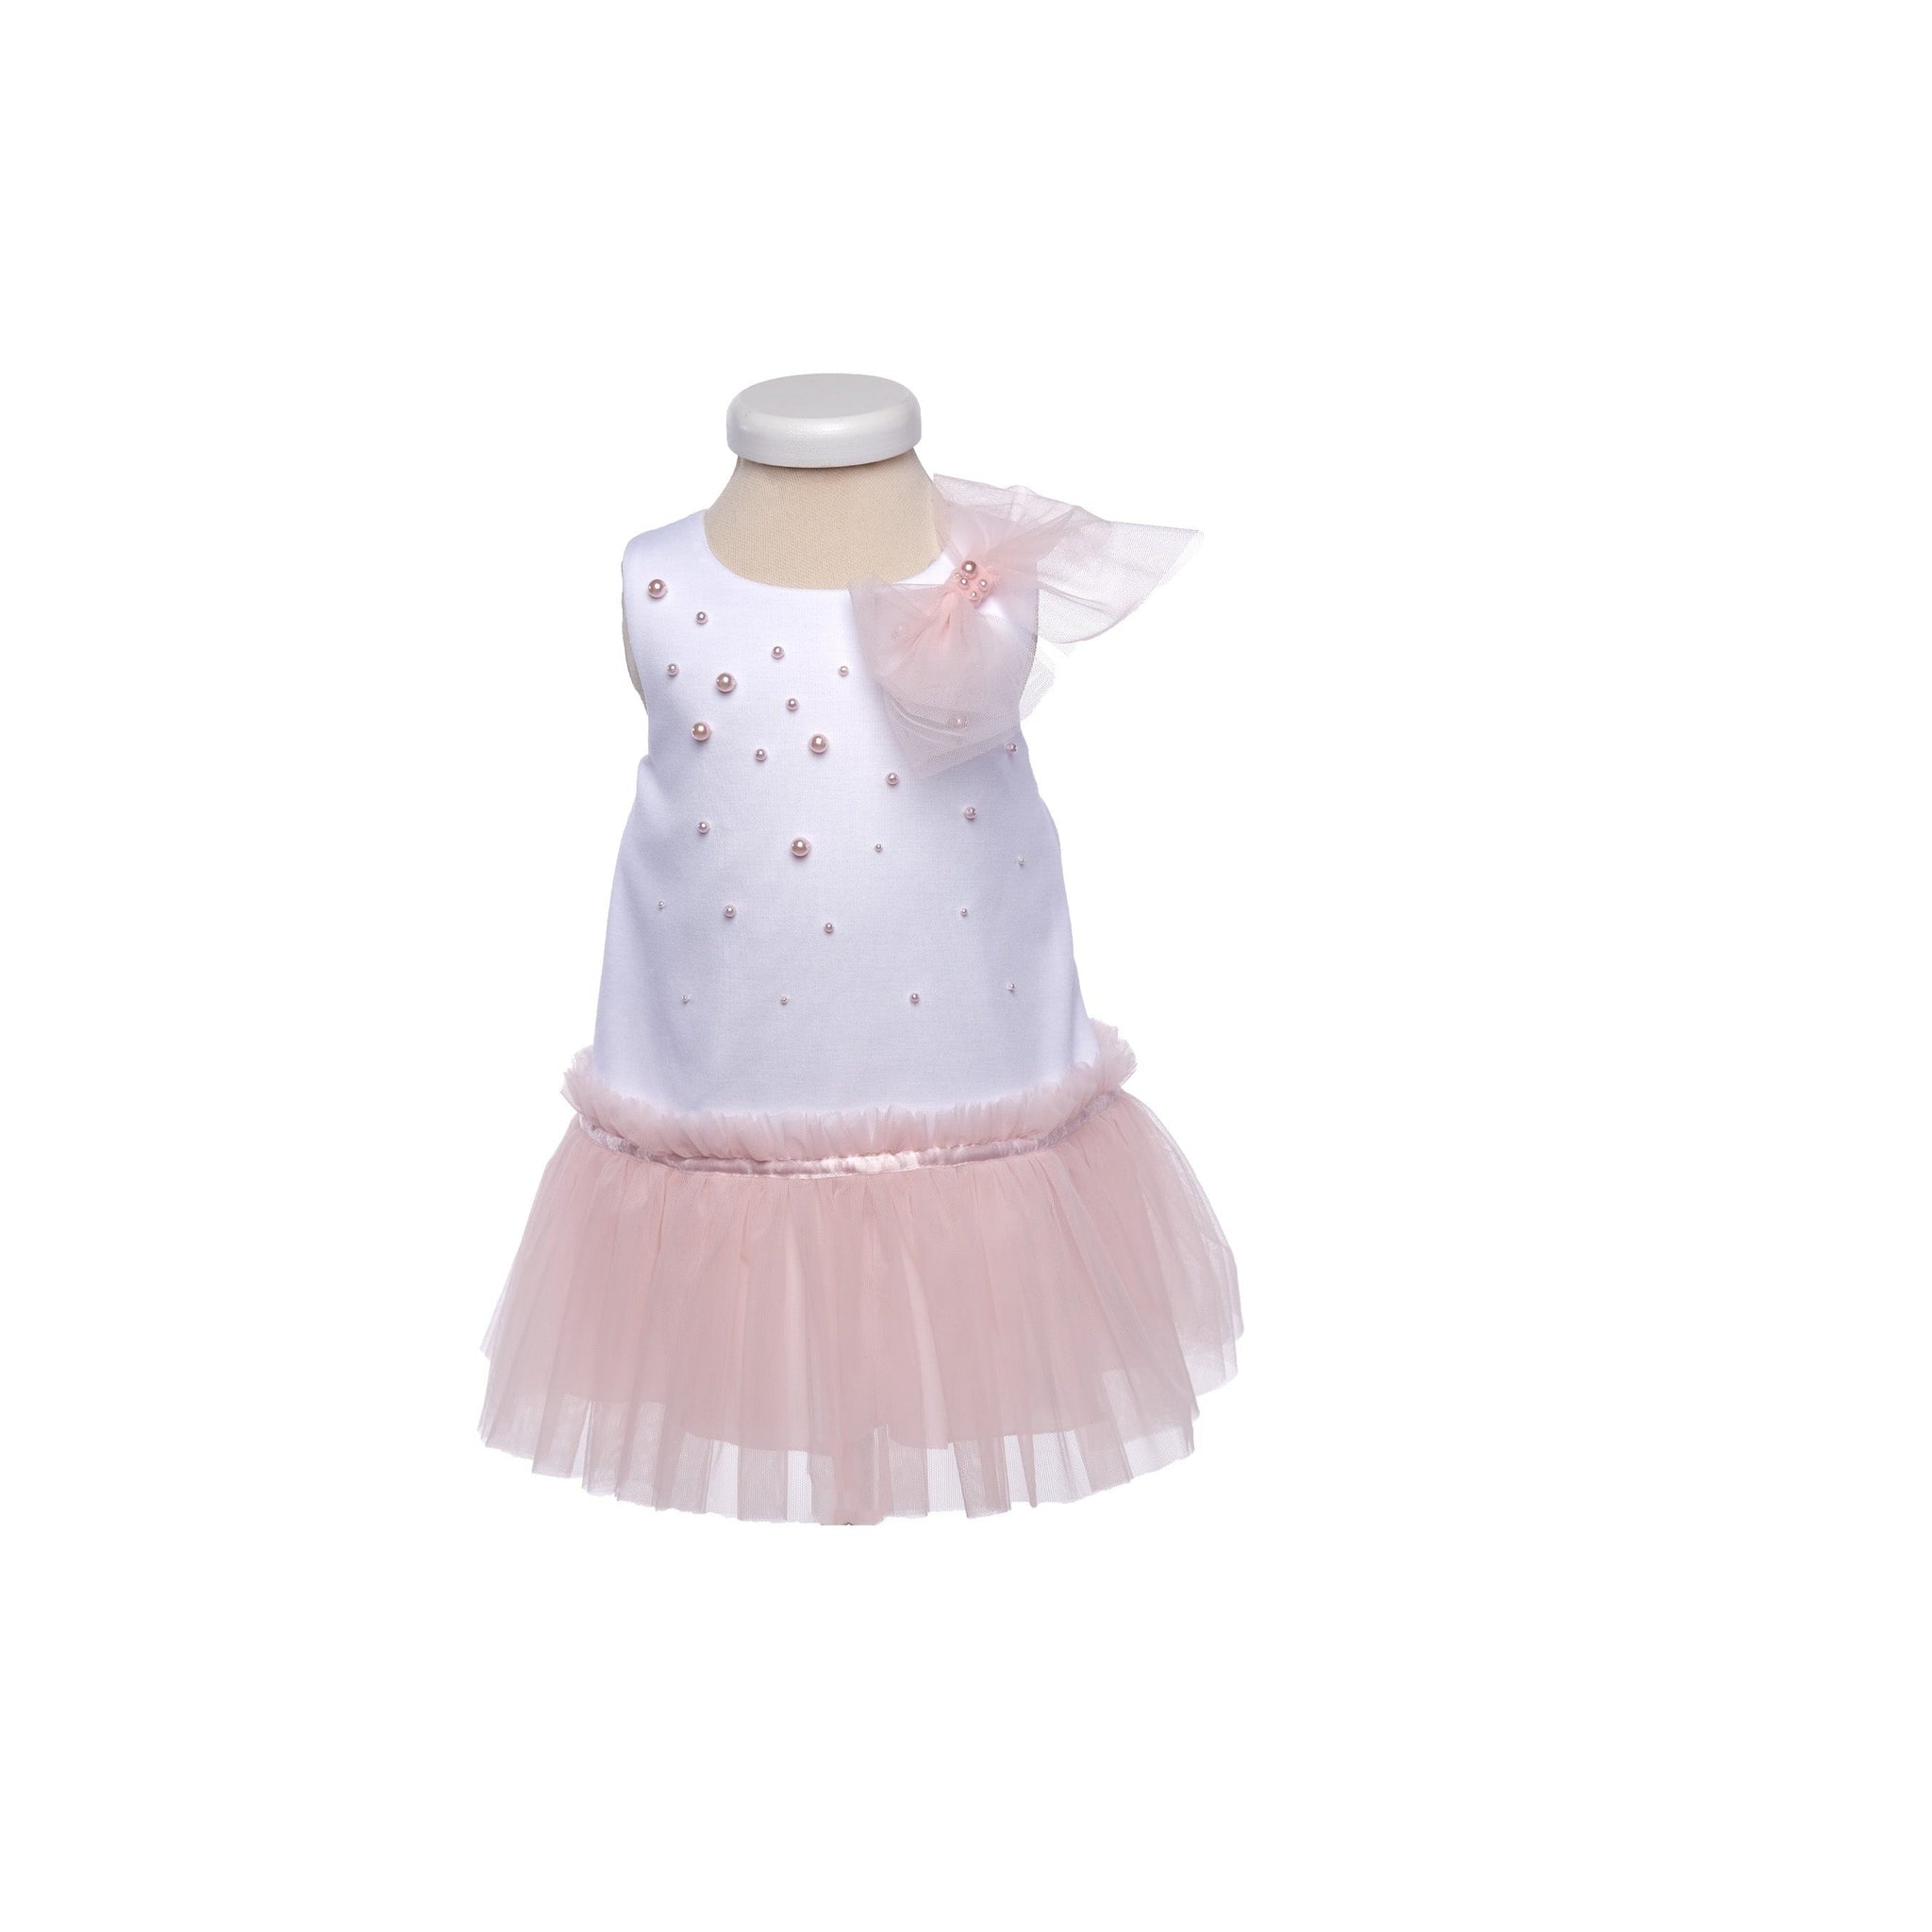 Bimbalò Dress 18M Bimbalo Baby Girls Pink White Pearl Dress